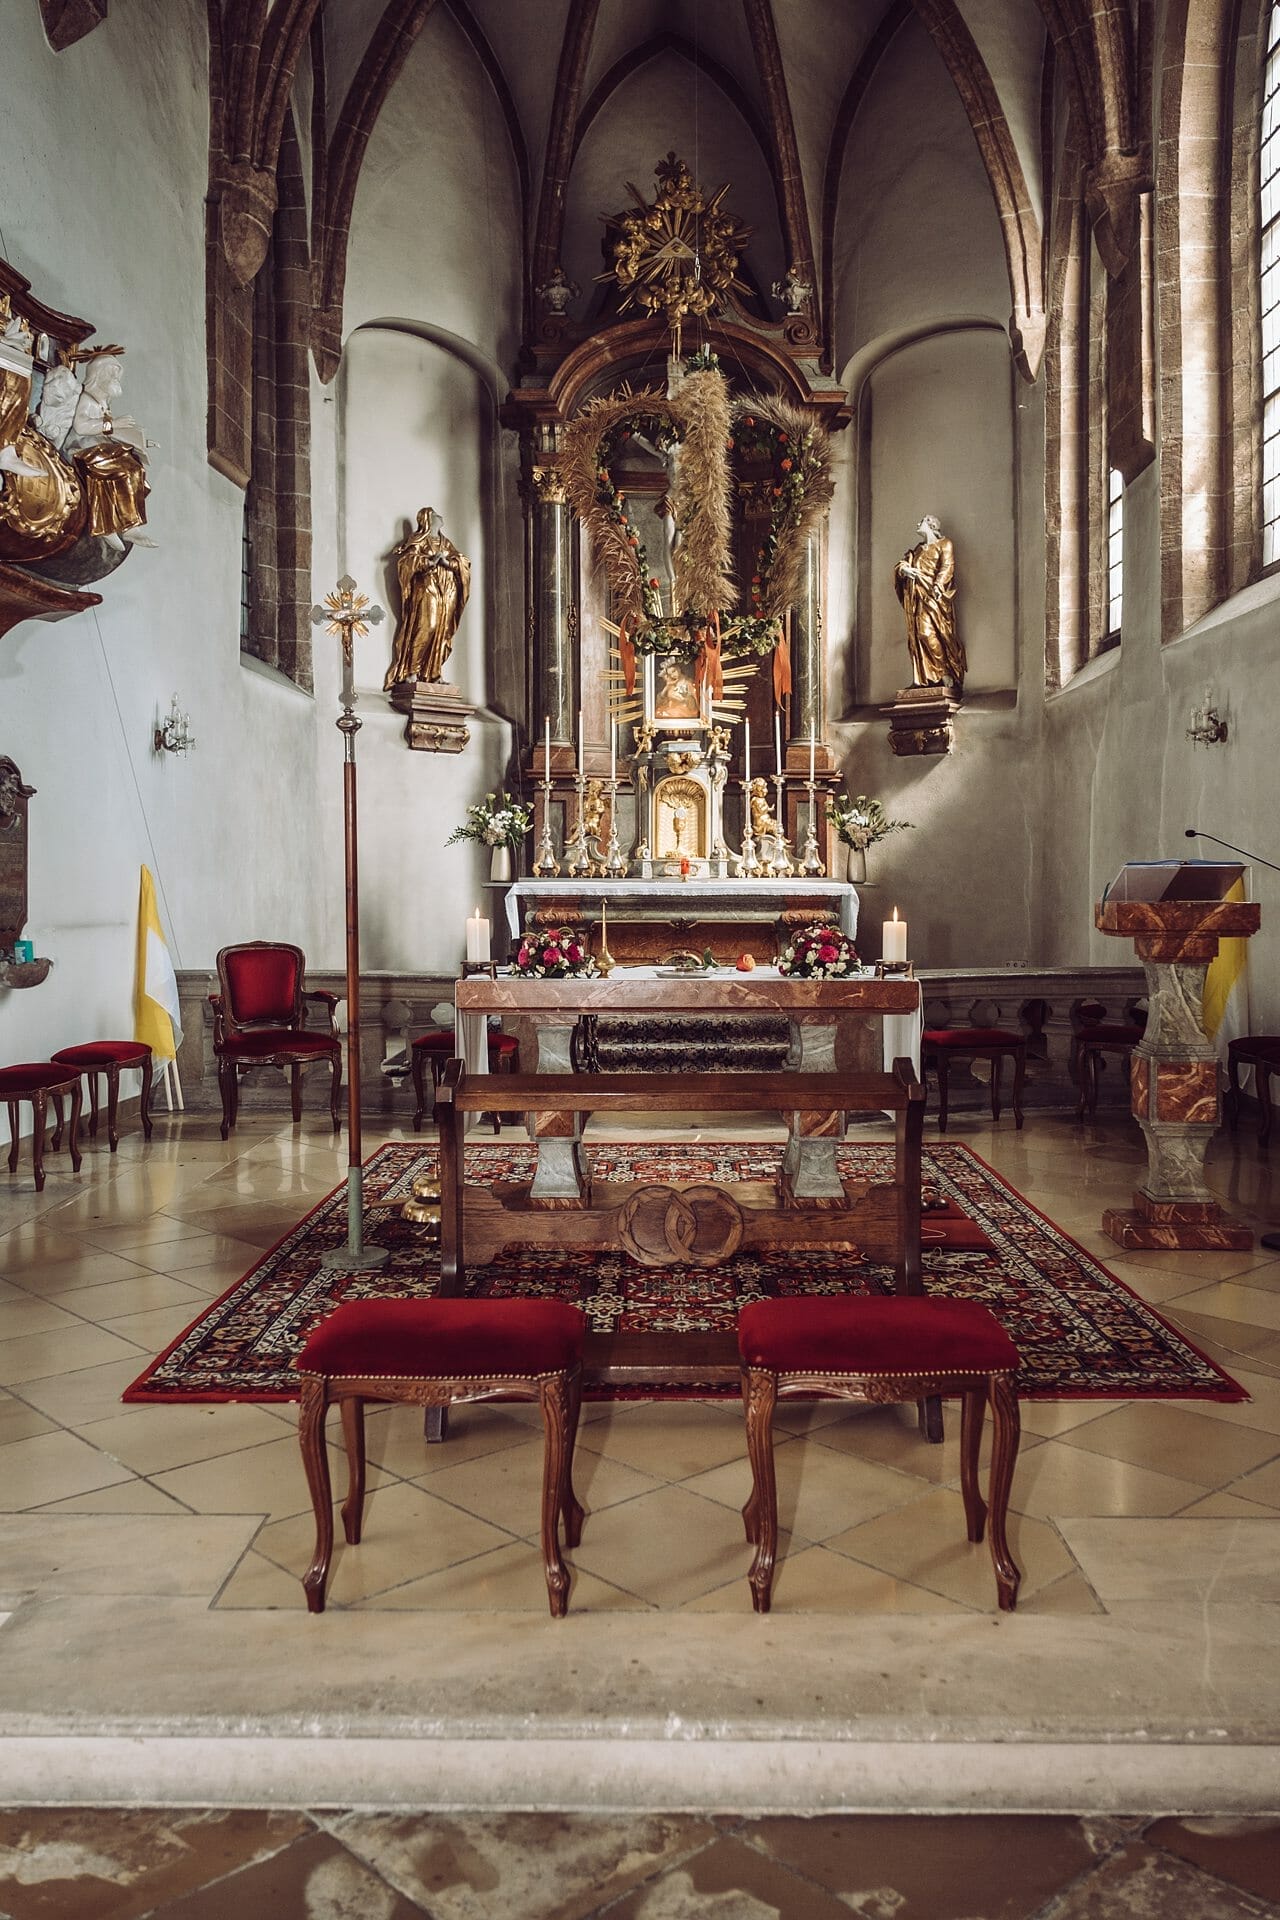 Ein reich verzierter Altar in einer Kirche.